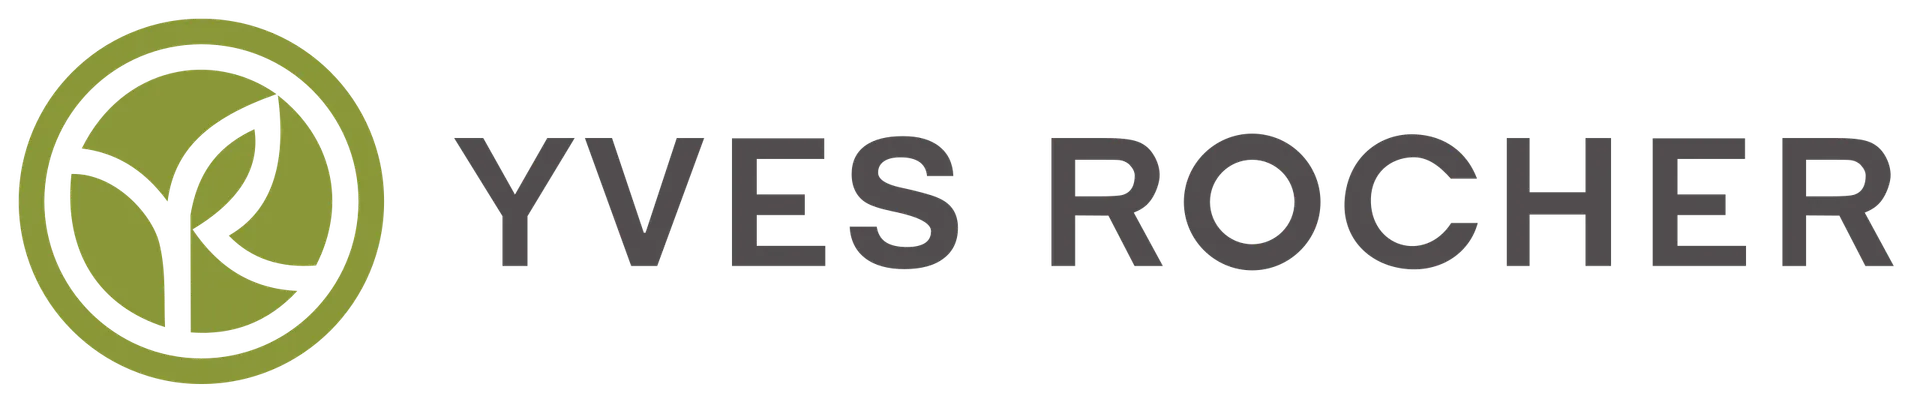 YVES ROCHER logo